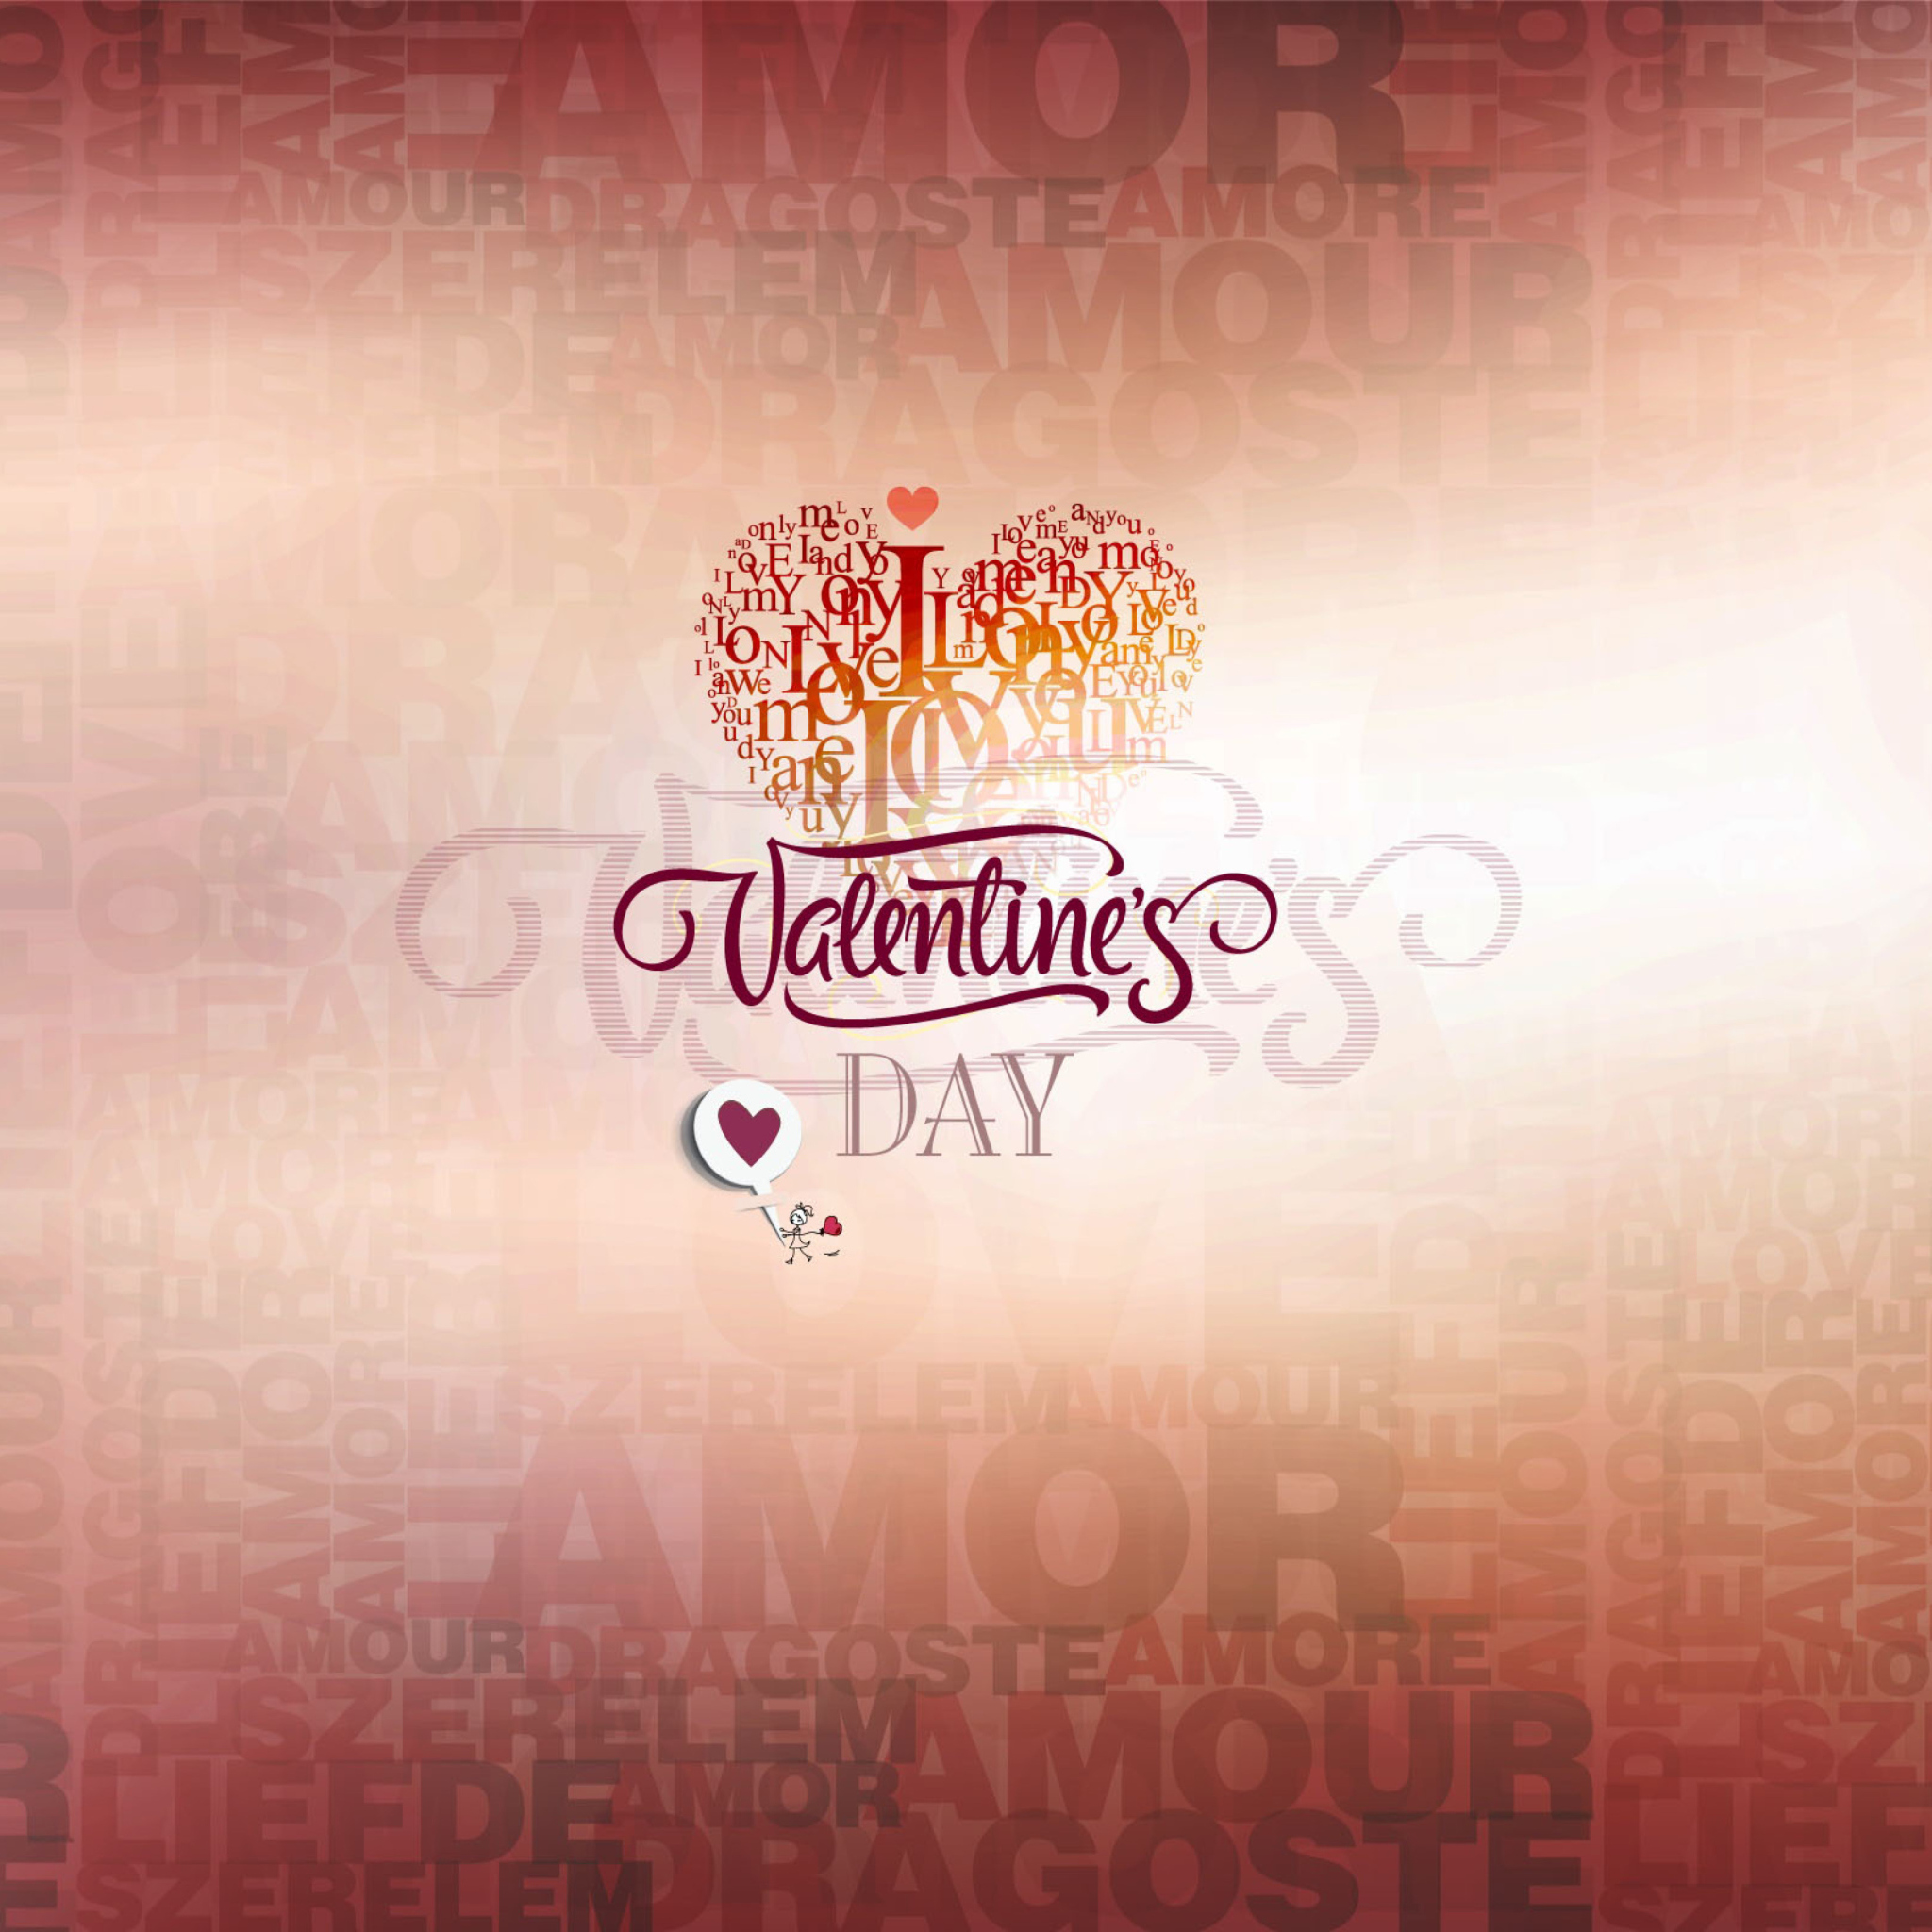 Das It's Valentine's Day! Wallpaper 2048x2048